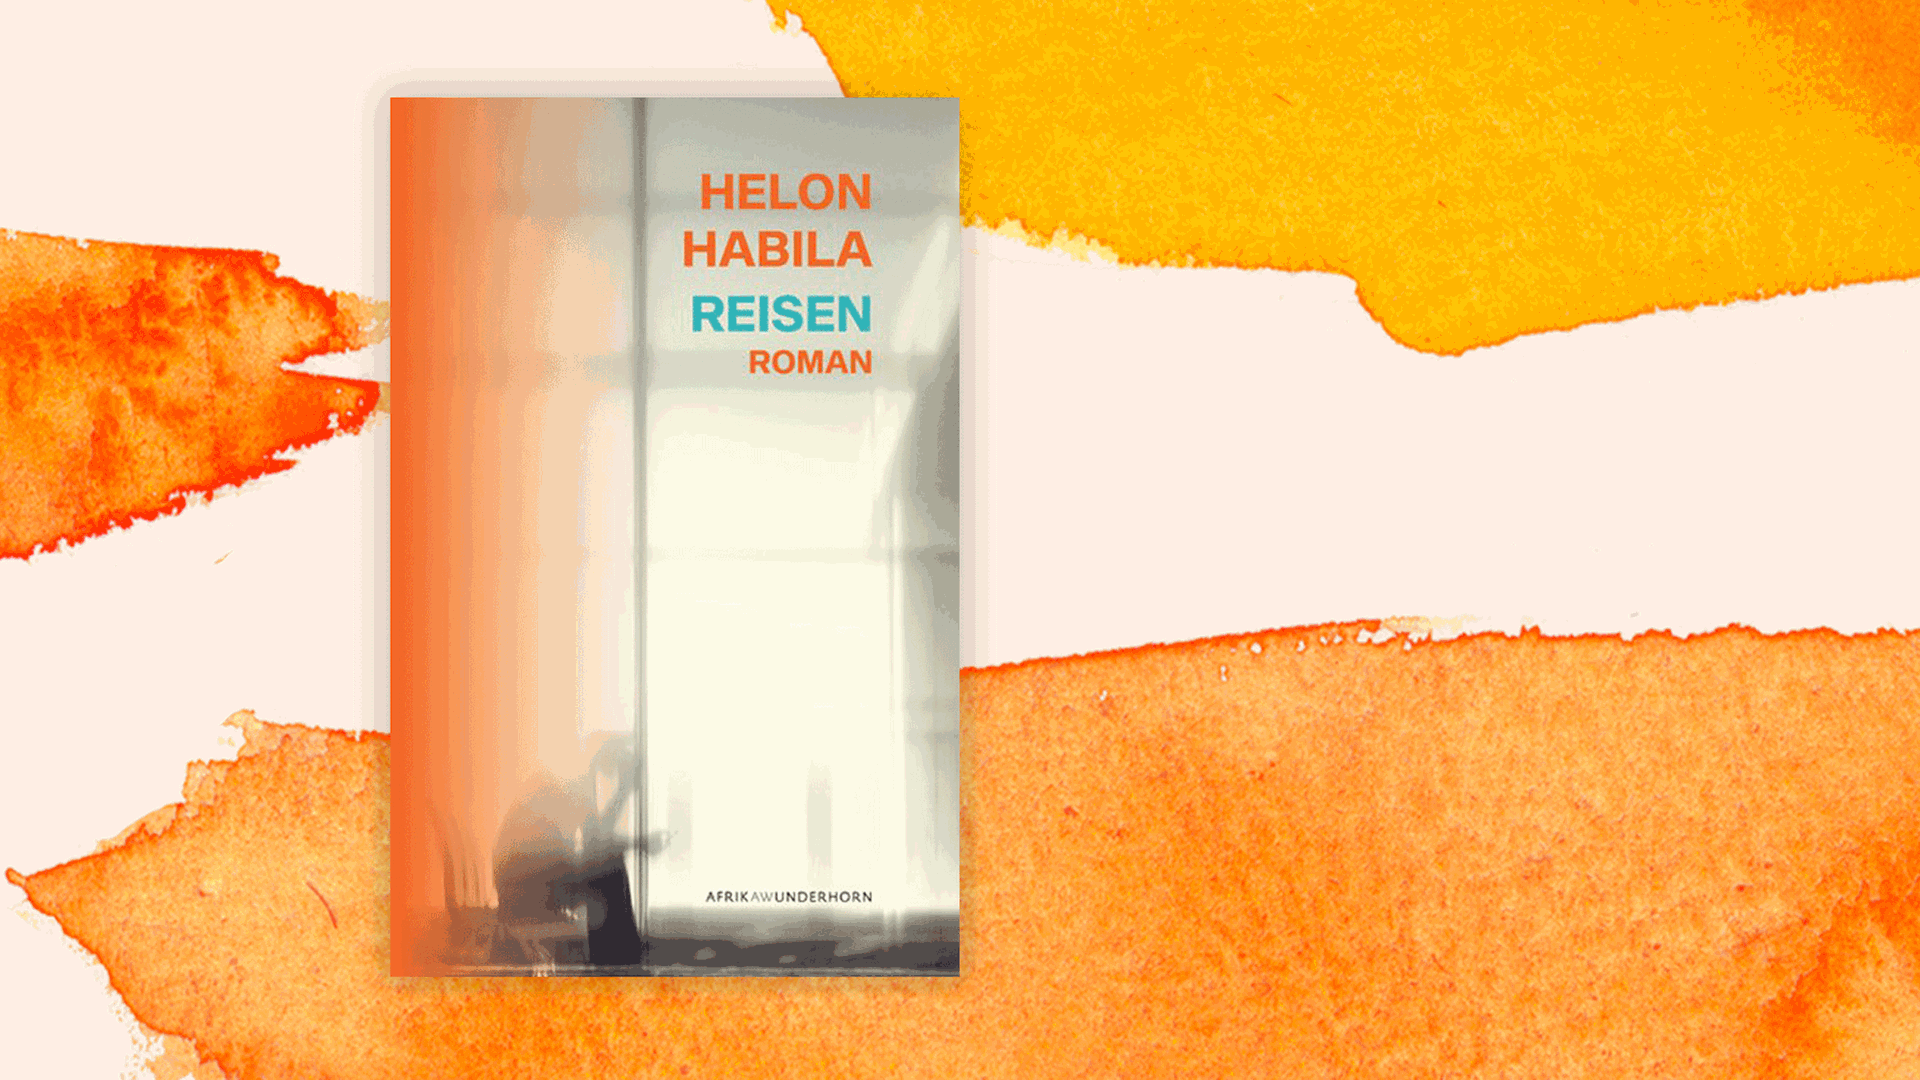 Cover des Buchs "Reisen" von Helon Habila.